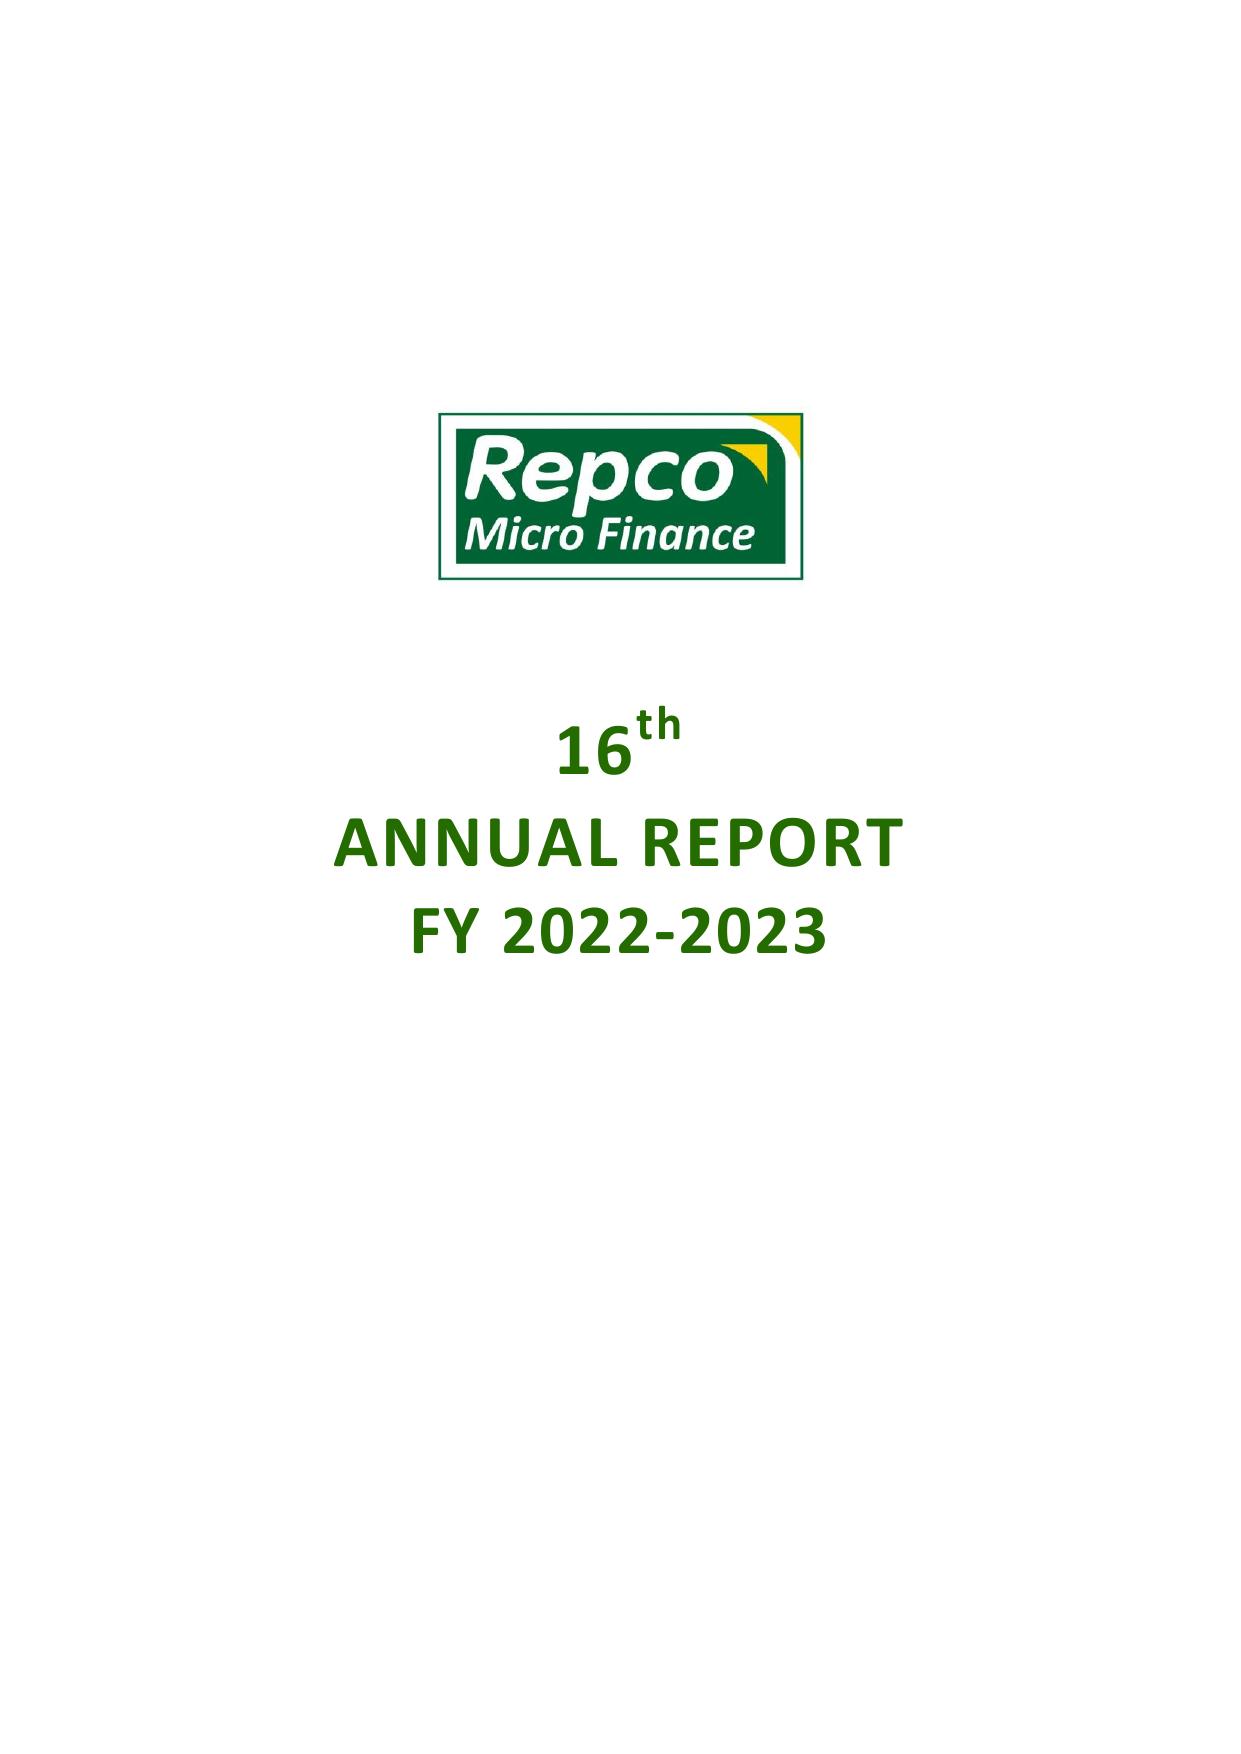 REPCOMICROFIN 2023 Annual Report